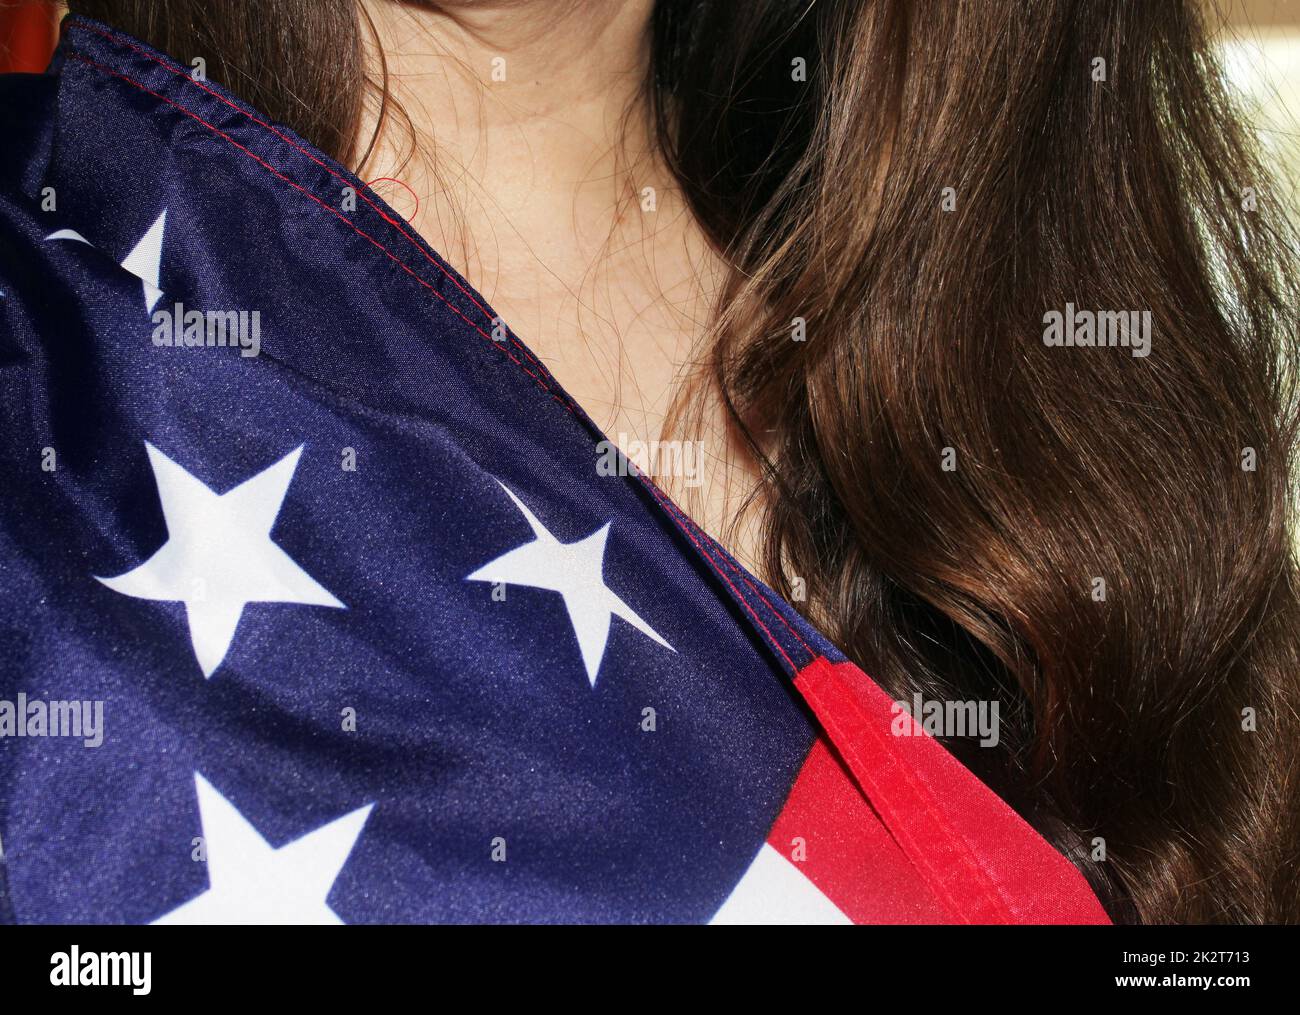 Ein Mädchen mit langen dunklen Haaren hält eine US-Flagge in der Hand Stockfoto